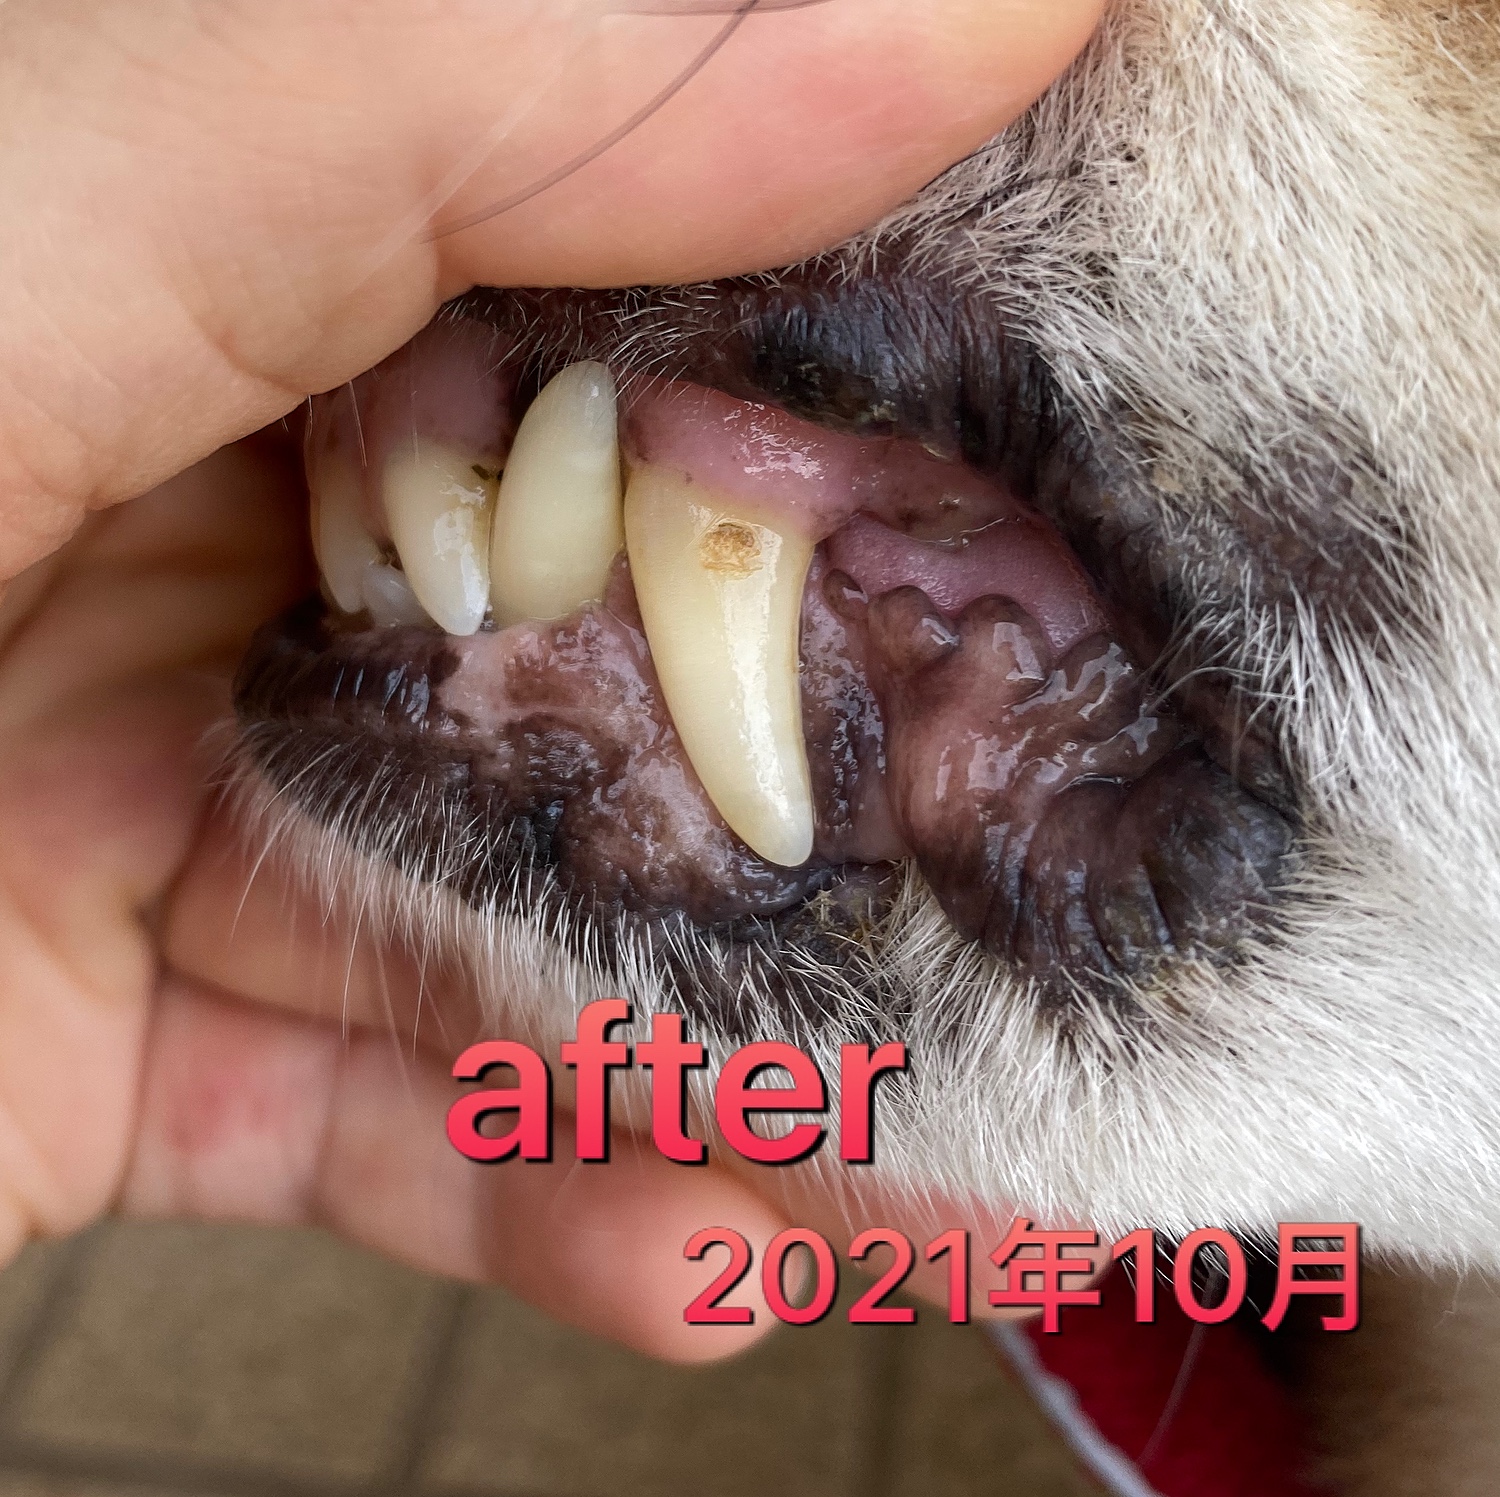 ペット用歯磨きジェル スカローデンタルジェル無香料 40g 歯垢 歯石除去 口臭予防 歯周病の予防